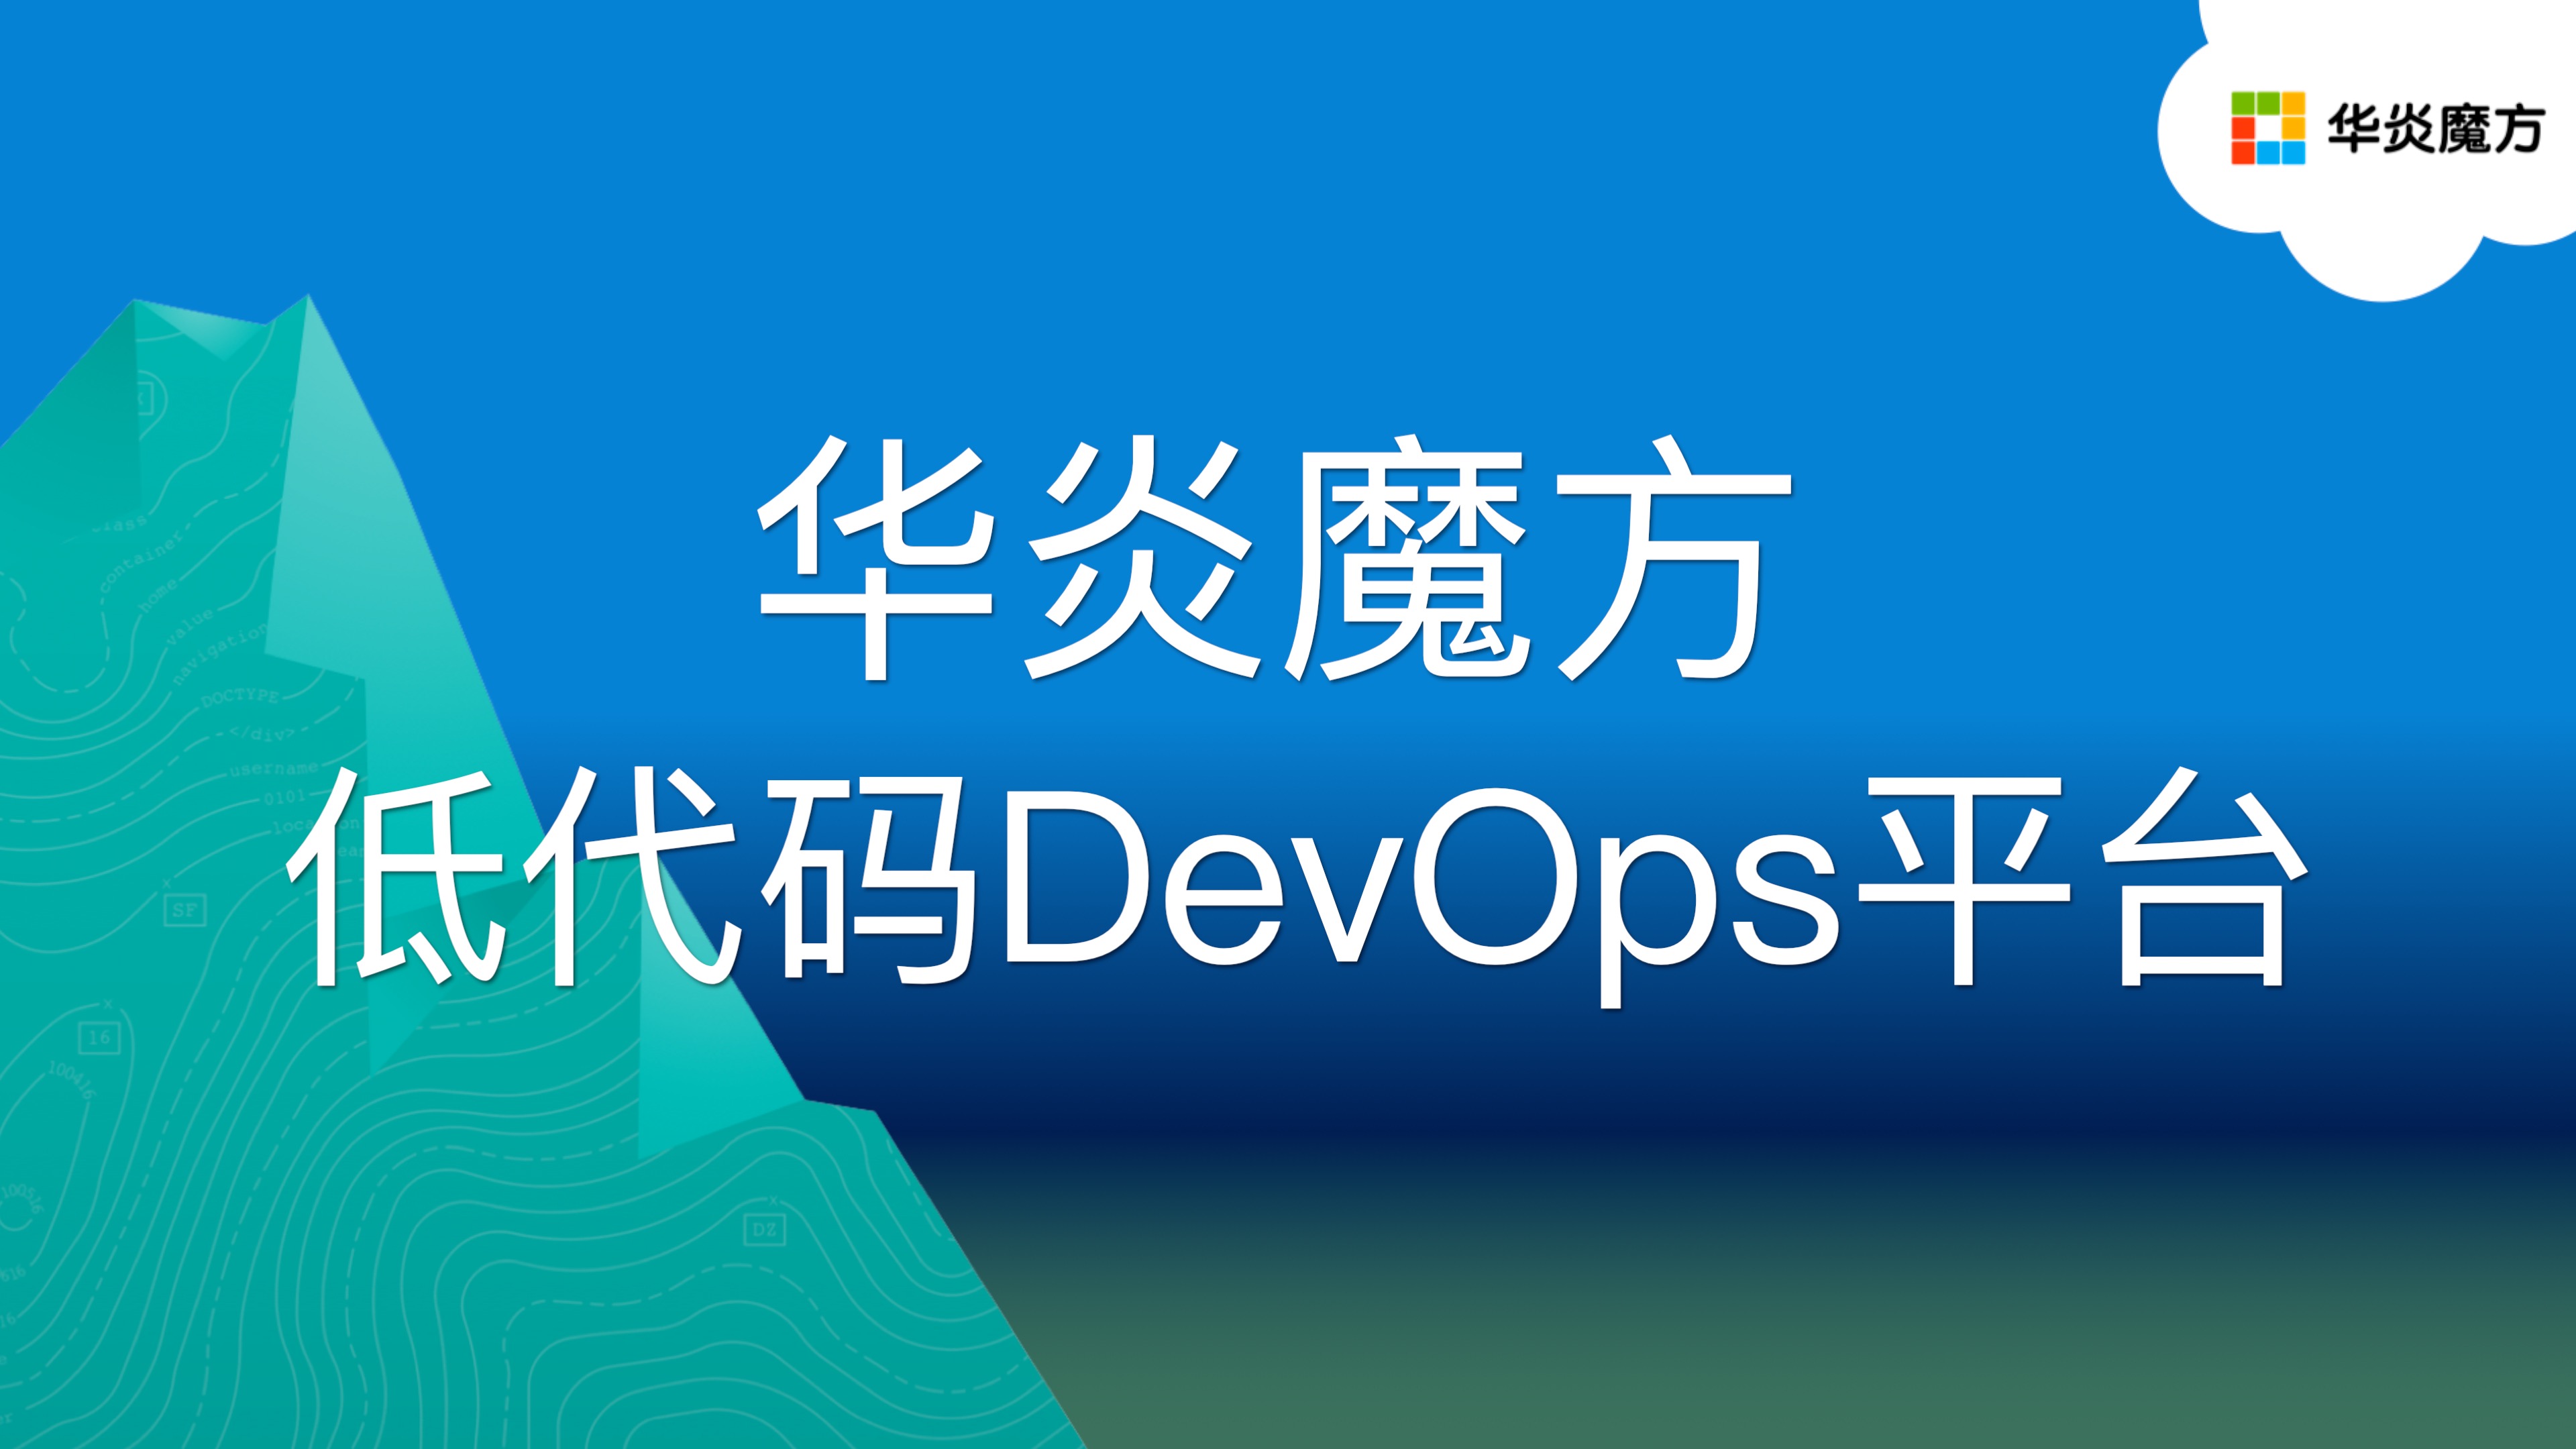 华炎魔方低代码 DevOps 平台